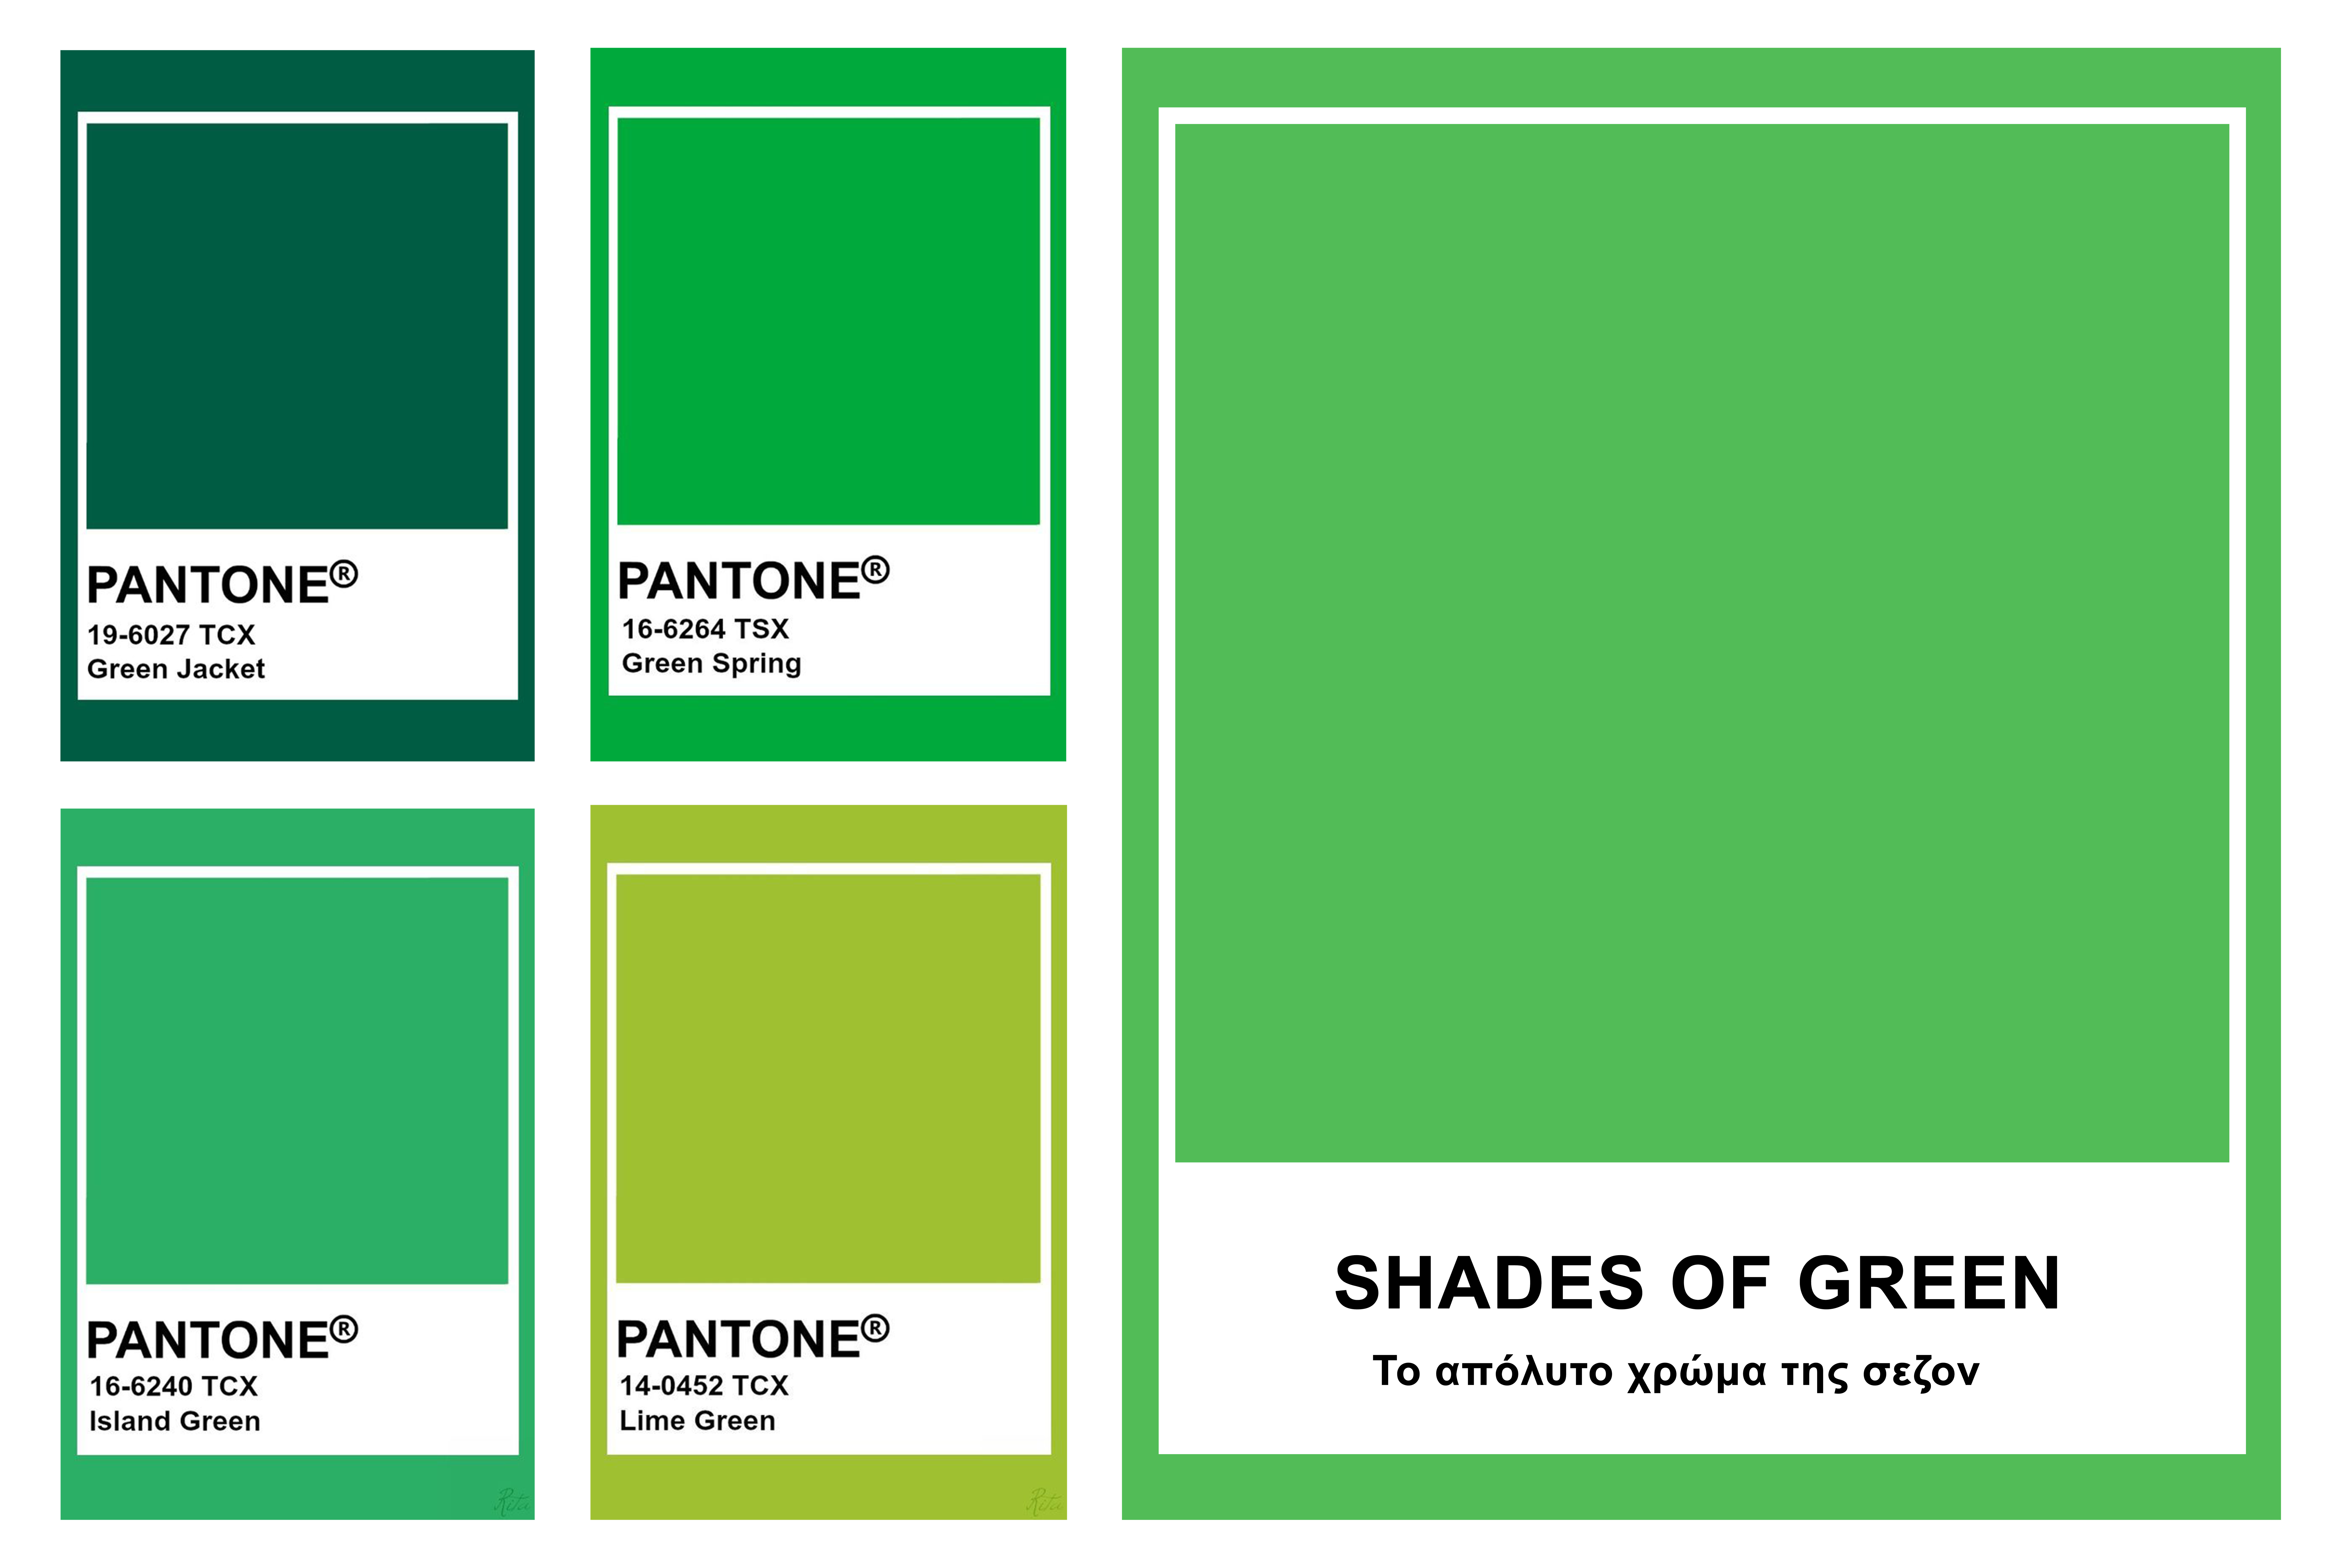 50 shades of Green!